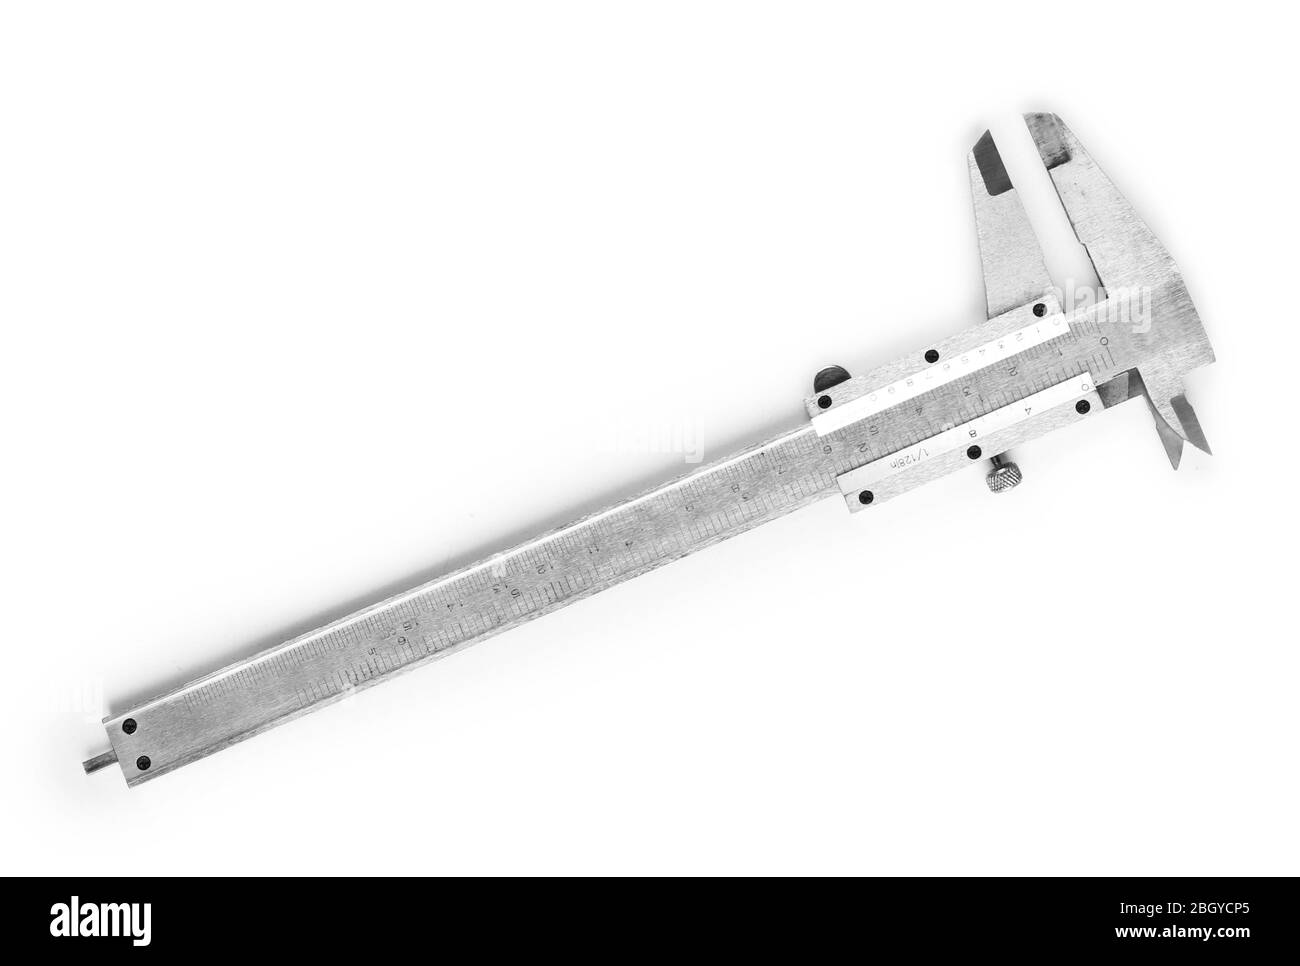 Vernier caliper (slide gauge) isolated on white Stock Photo